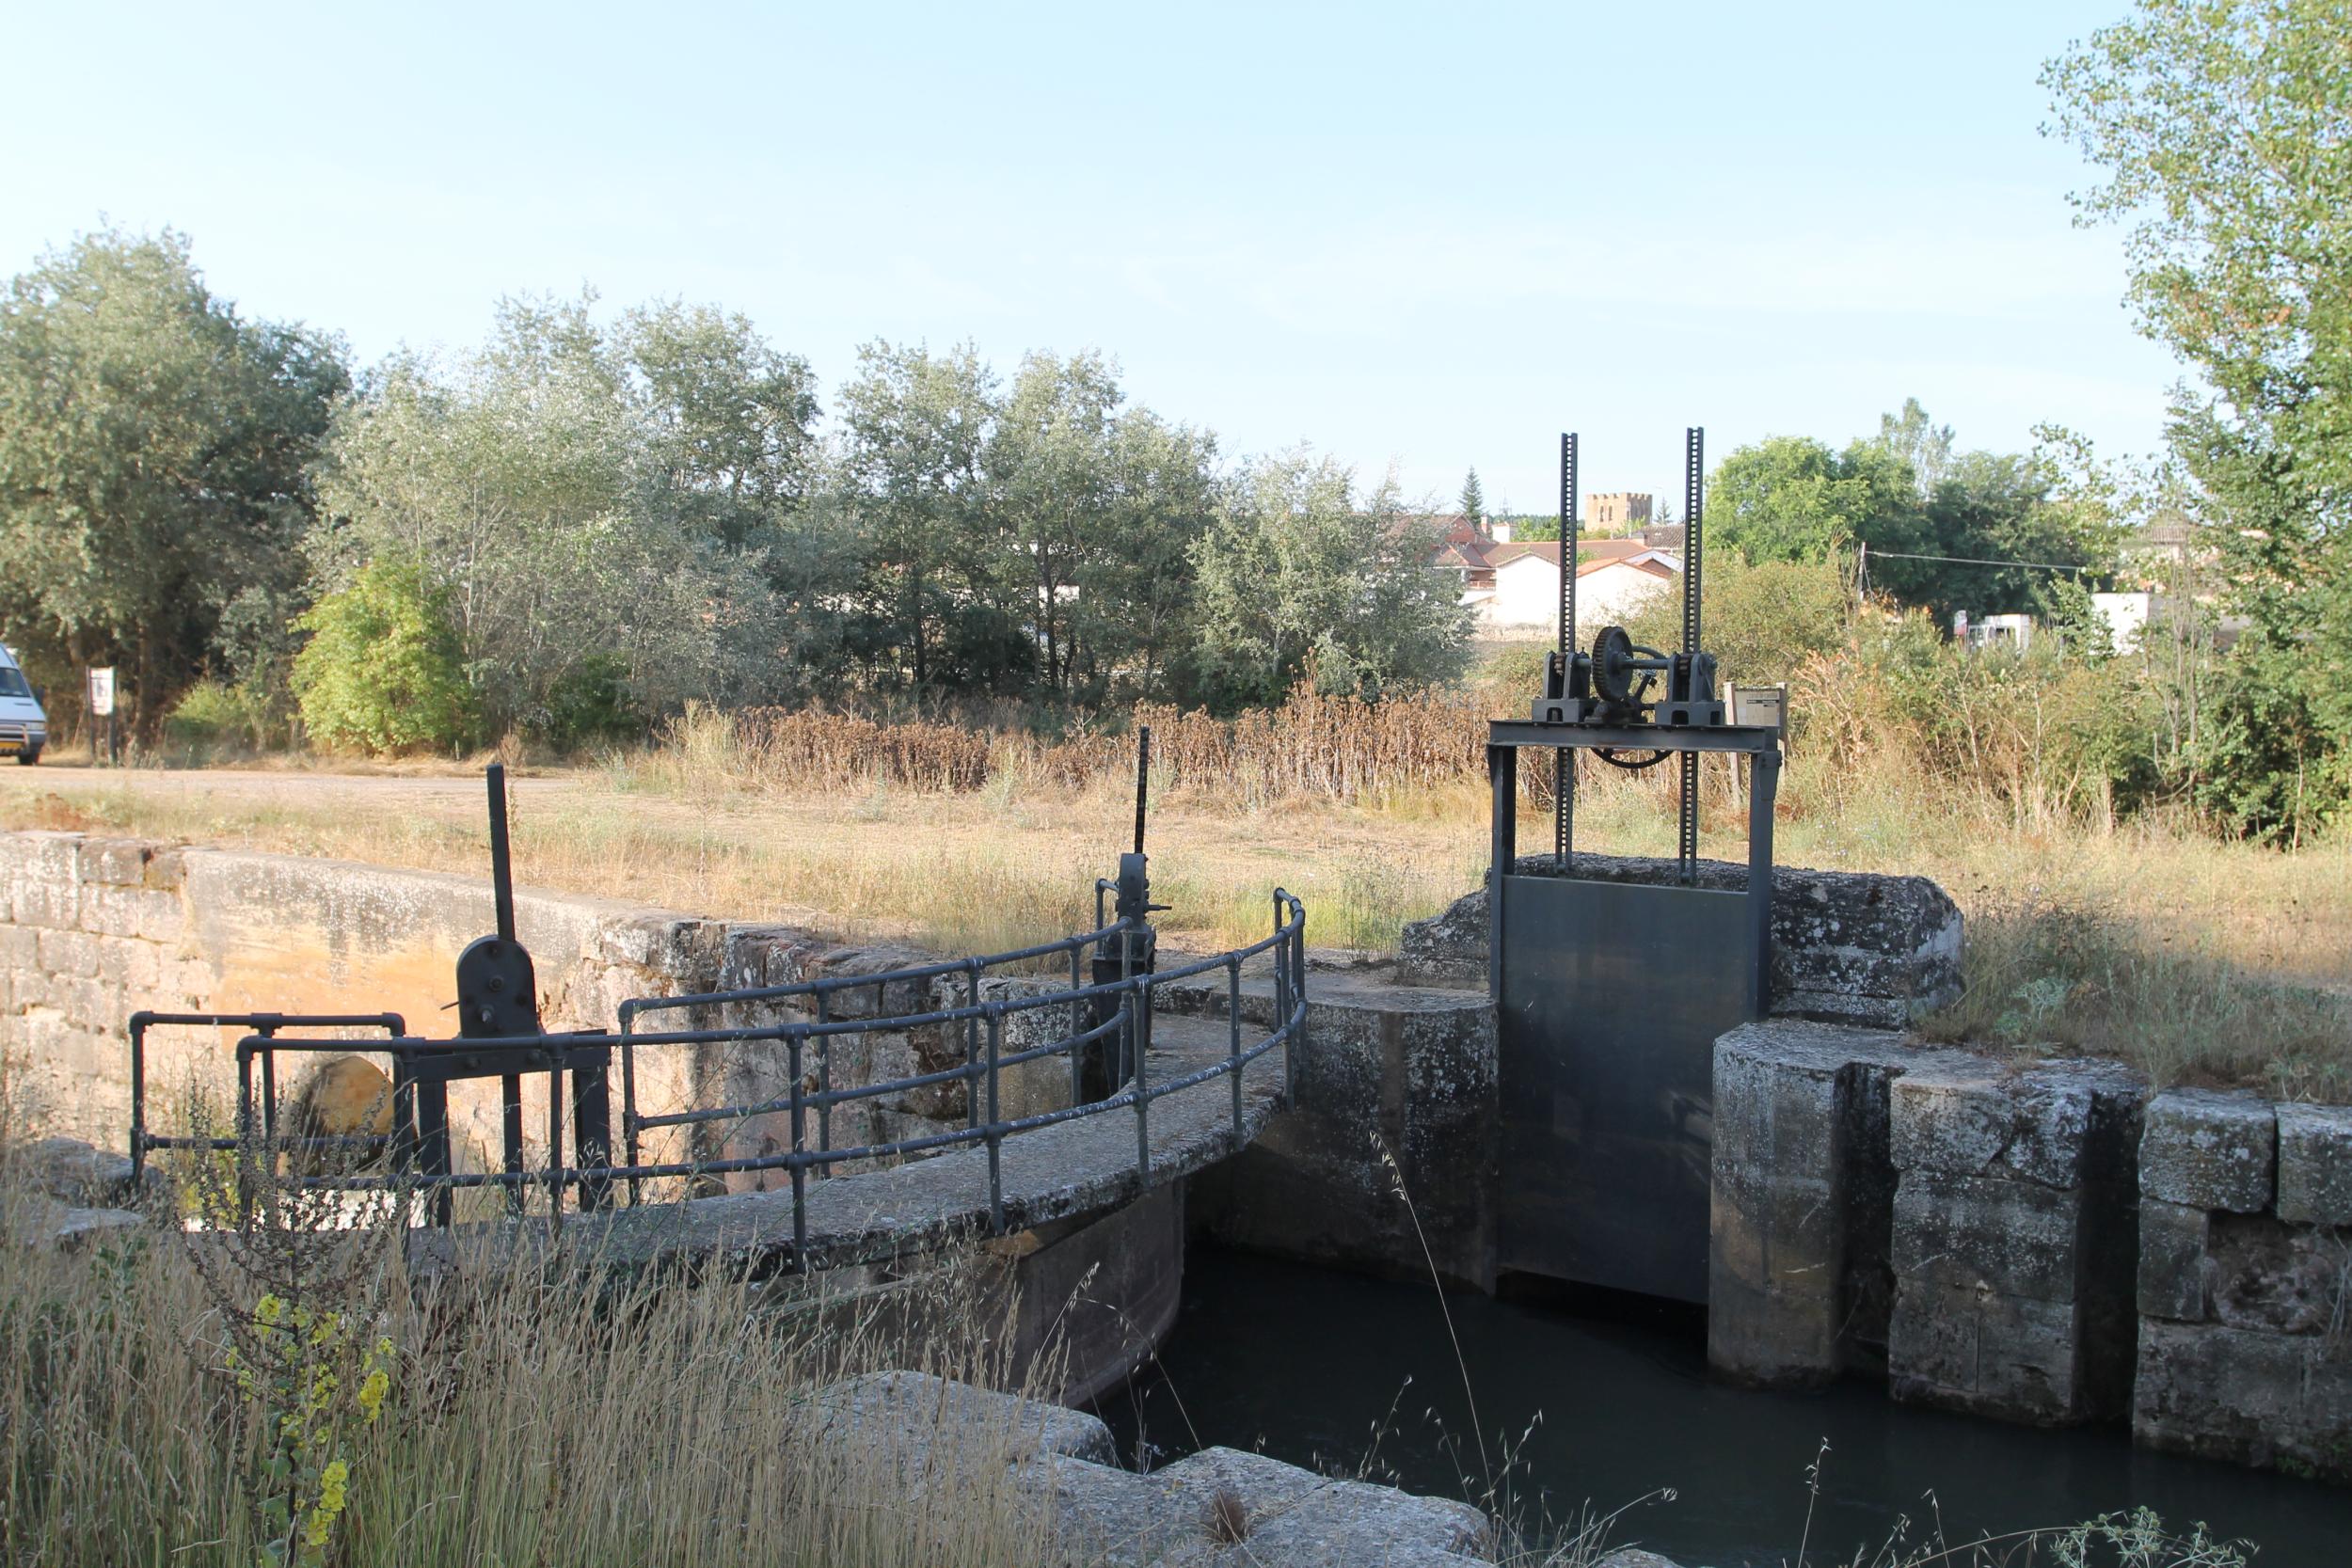 Esclusa 8 Canal de Castilla